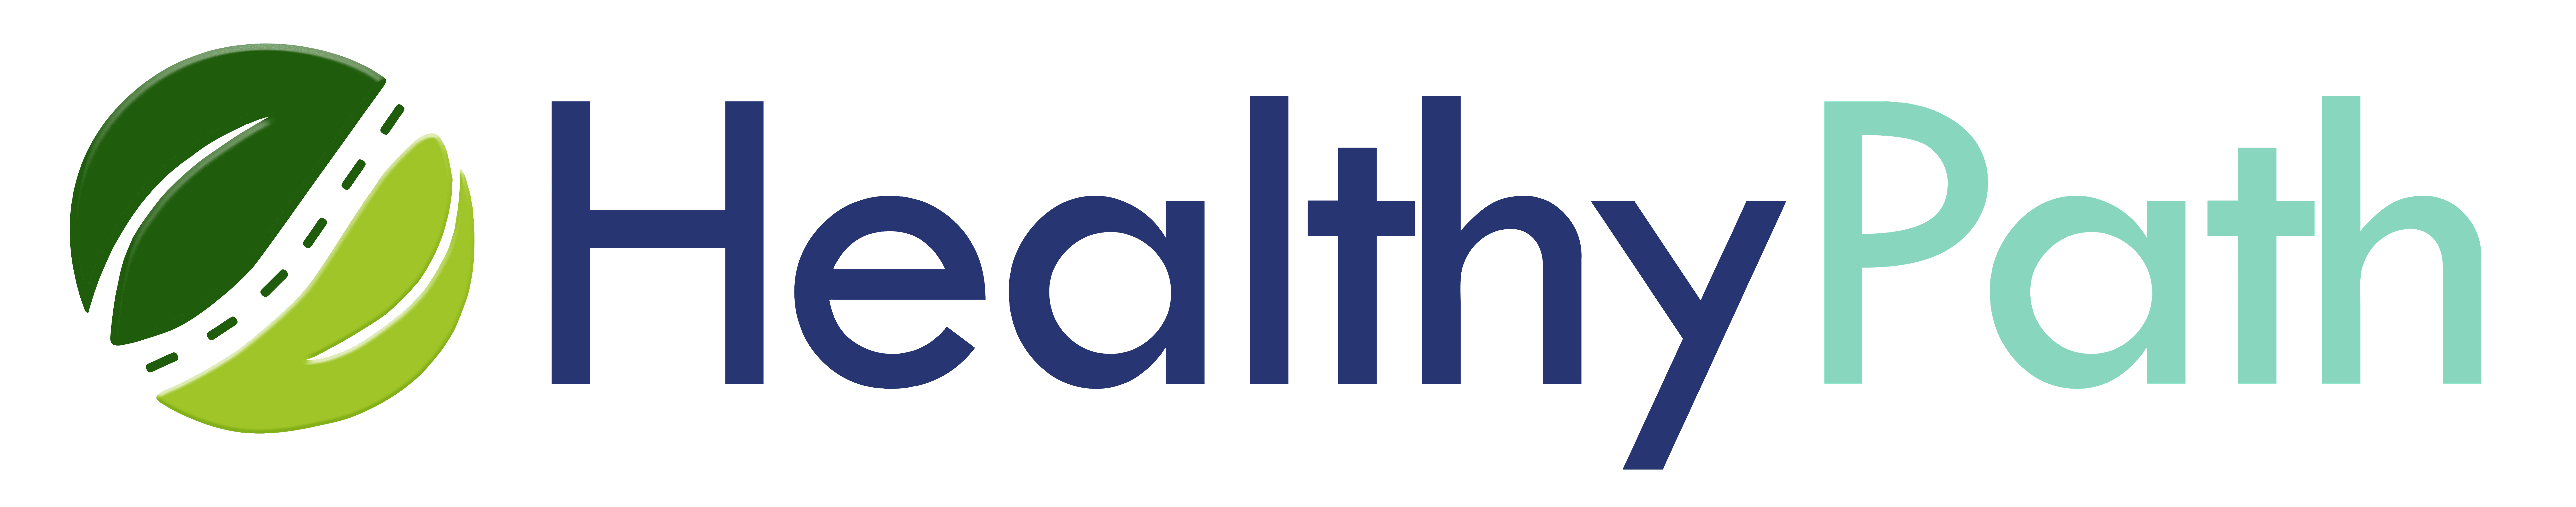 healthy path logo